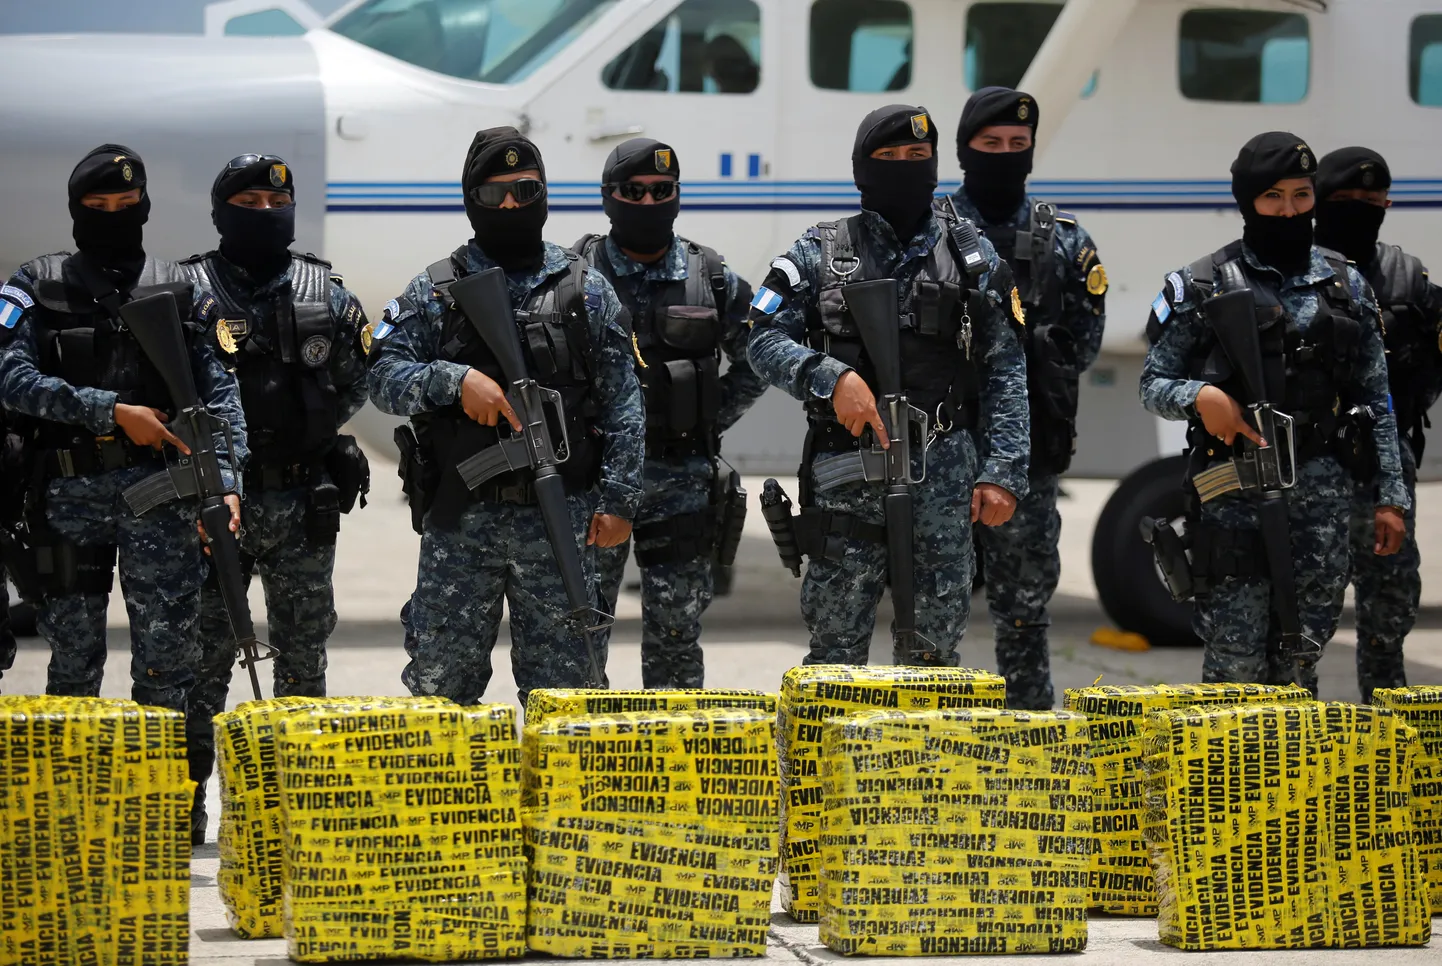 Pilt on illustratiivne. Guatemalas politsei seisab kokaiini pakkide taga.